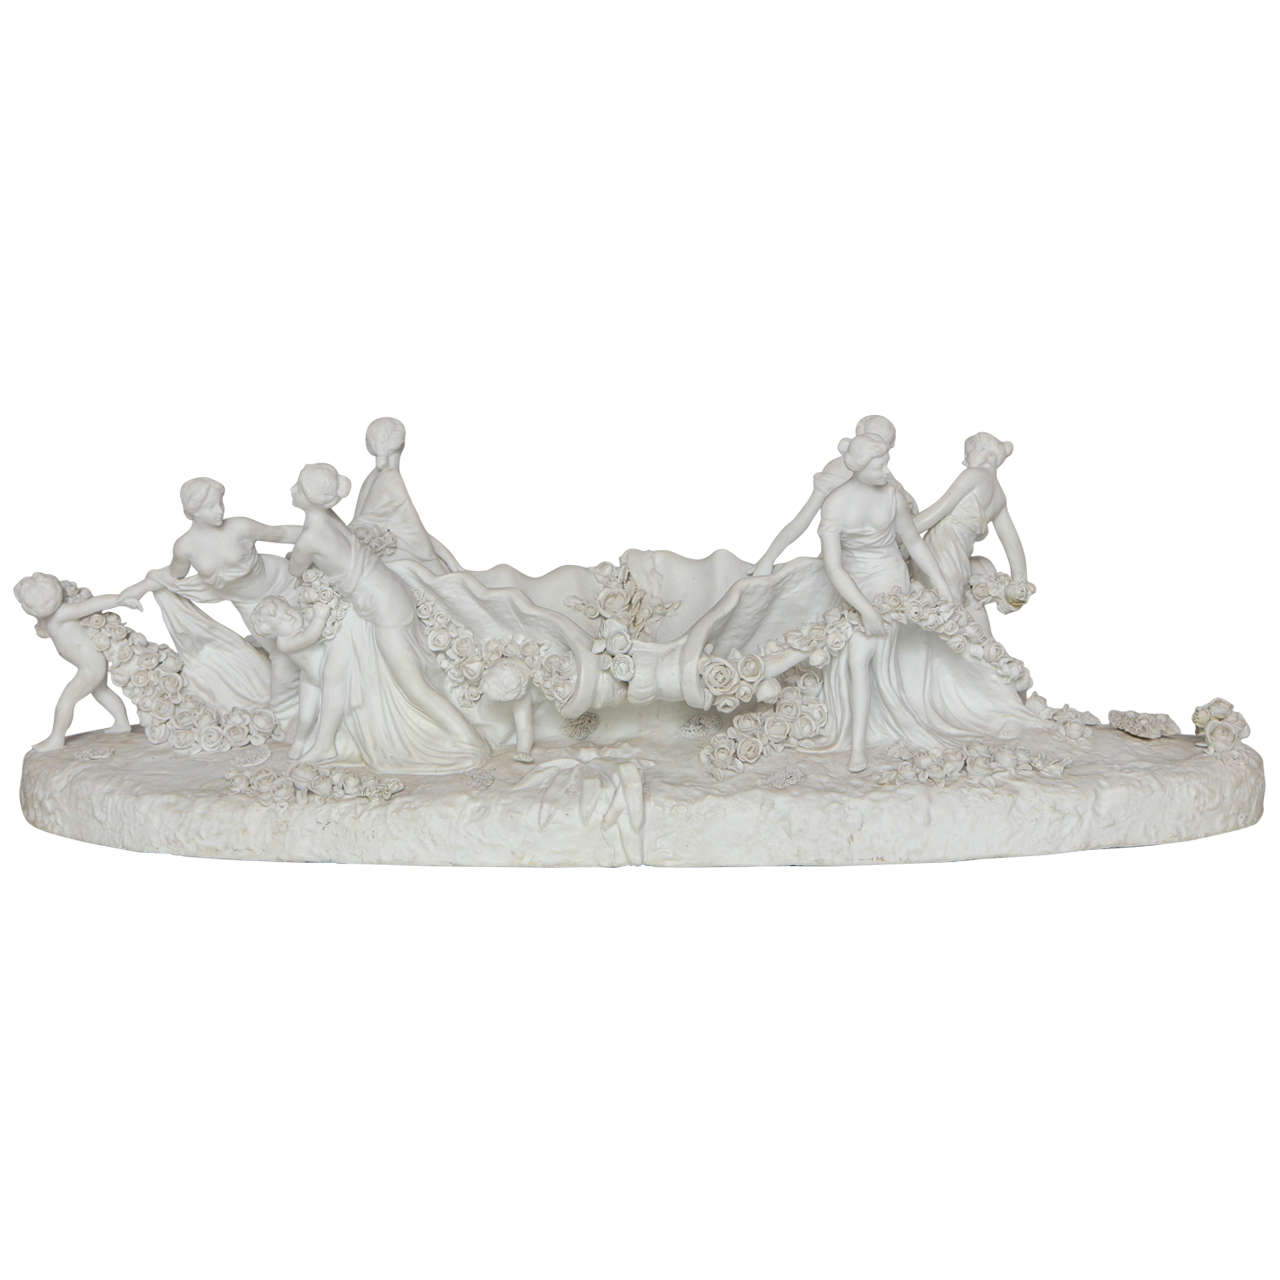 Grand centre de table figuratif en porcelaine biscuit blanc de Sèvres représentant une femme et des enfants